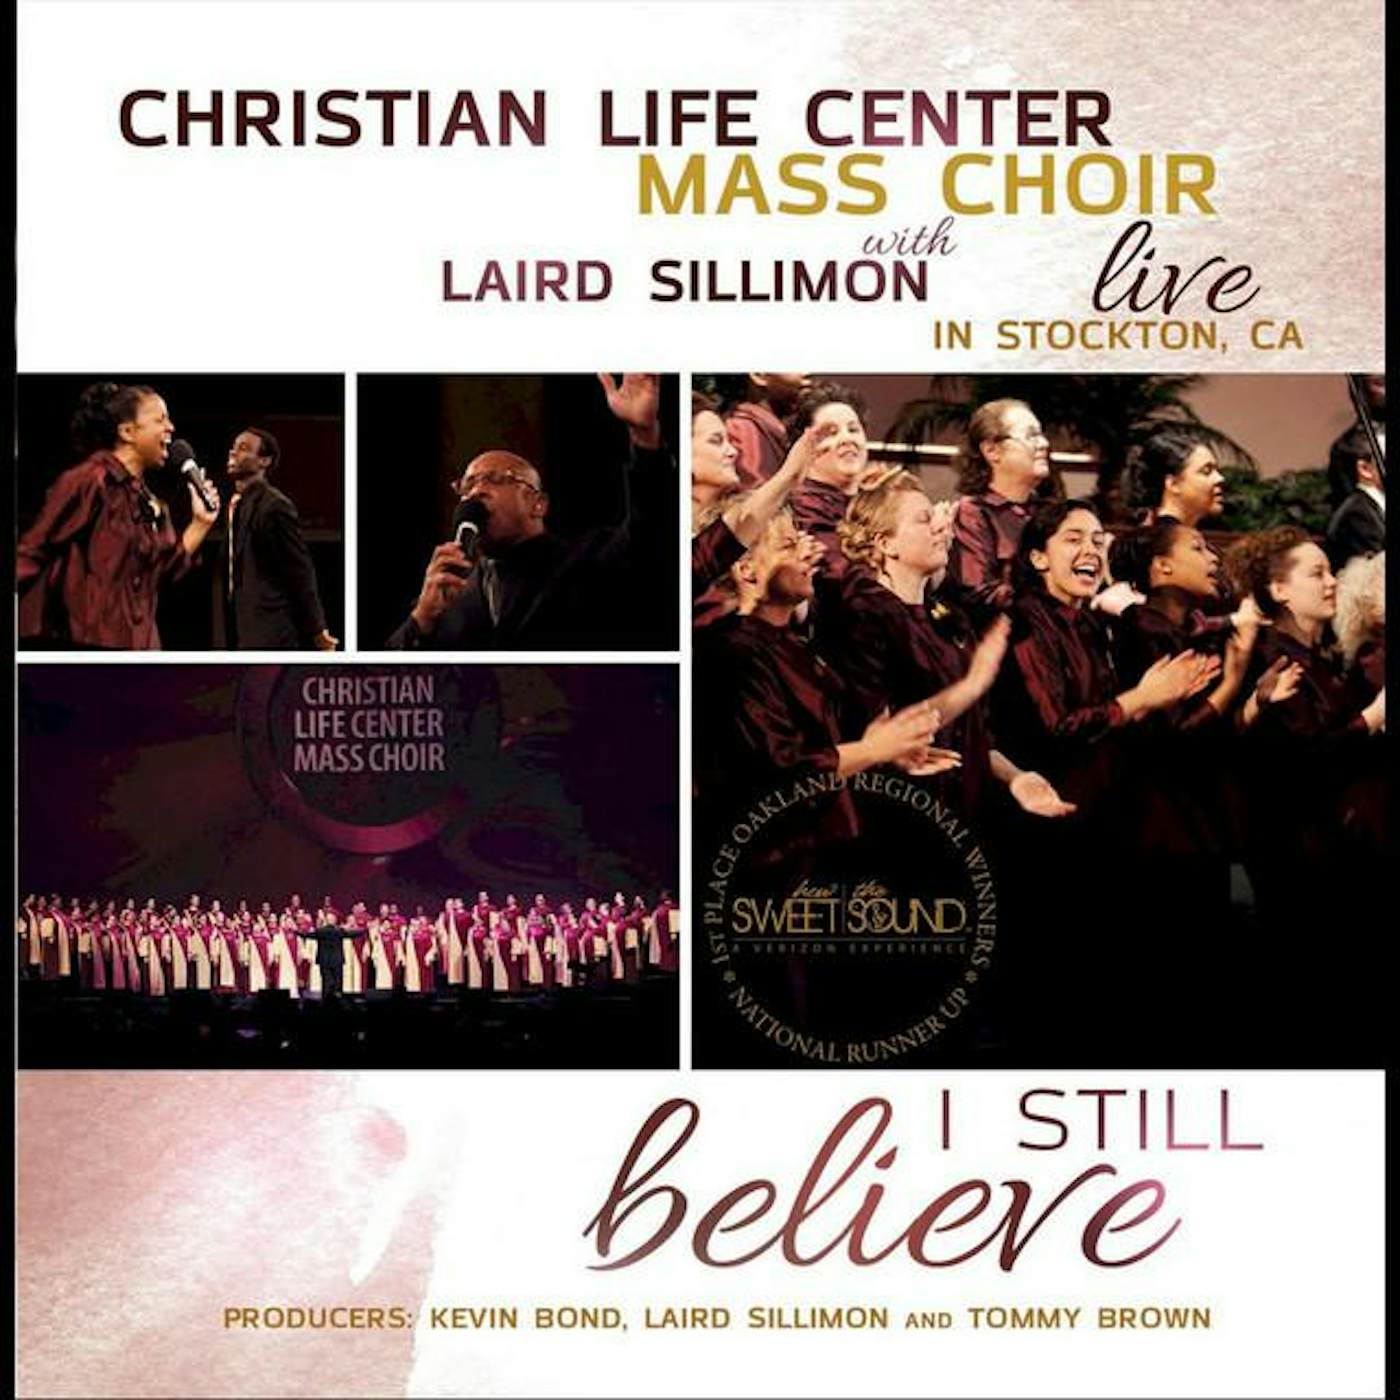 Christian Life Center Mass Choir